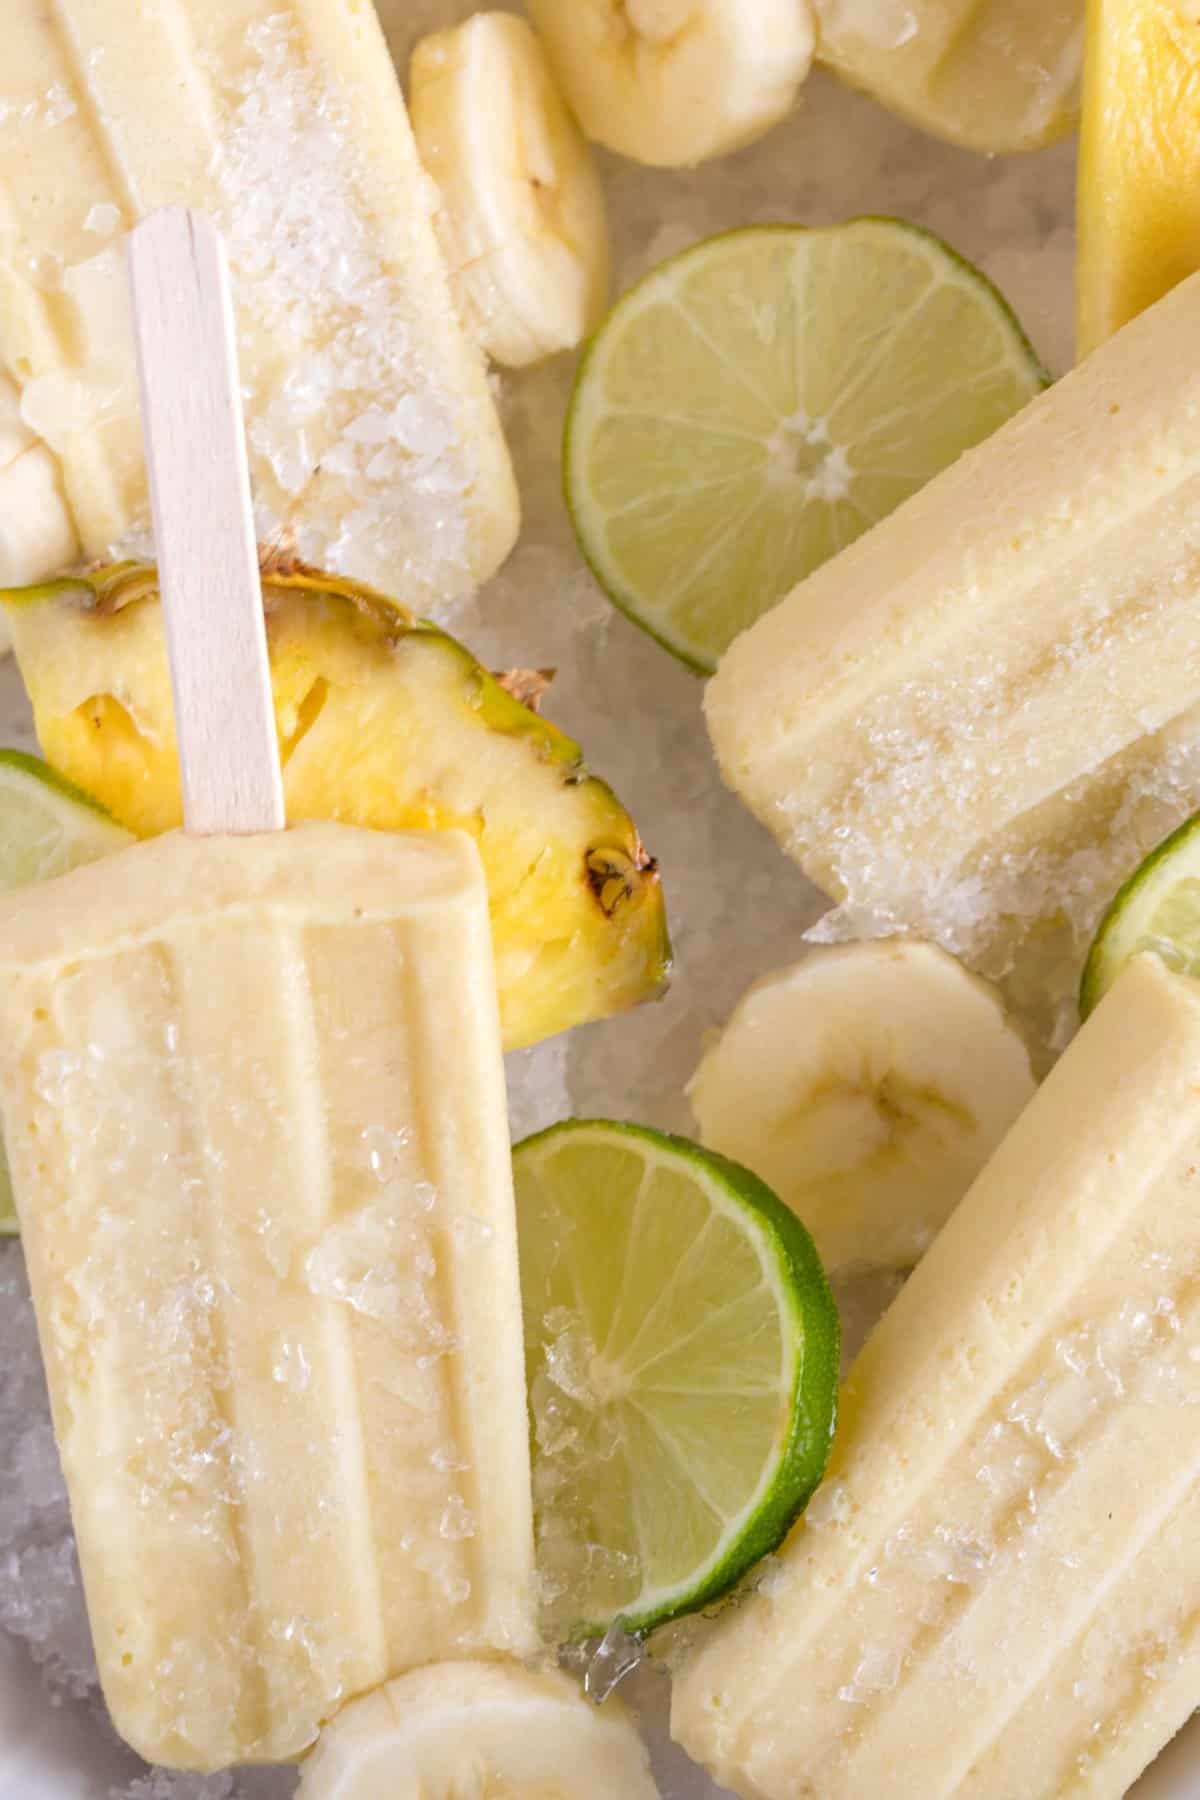 Pineapple Banana Popsicles - The Harvest Kitchen